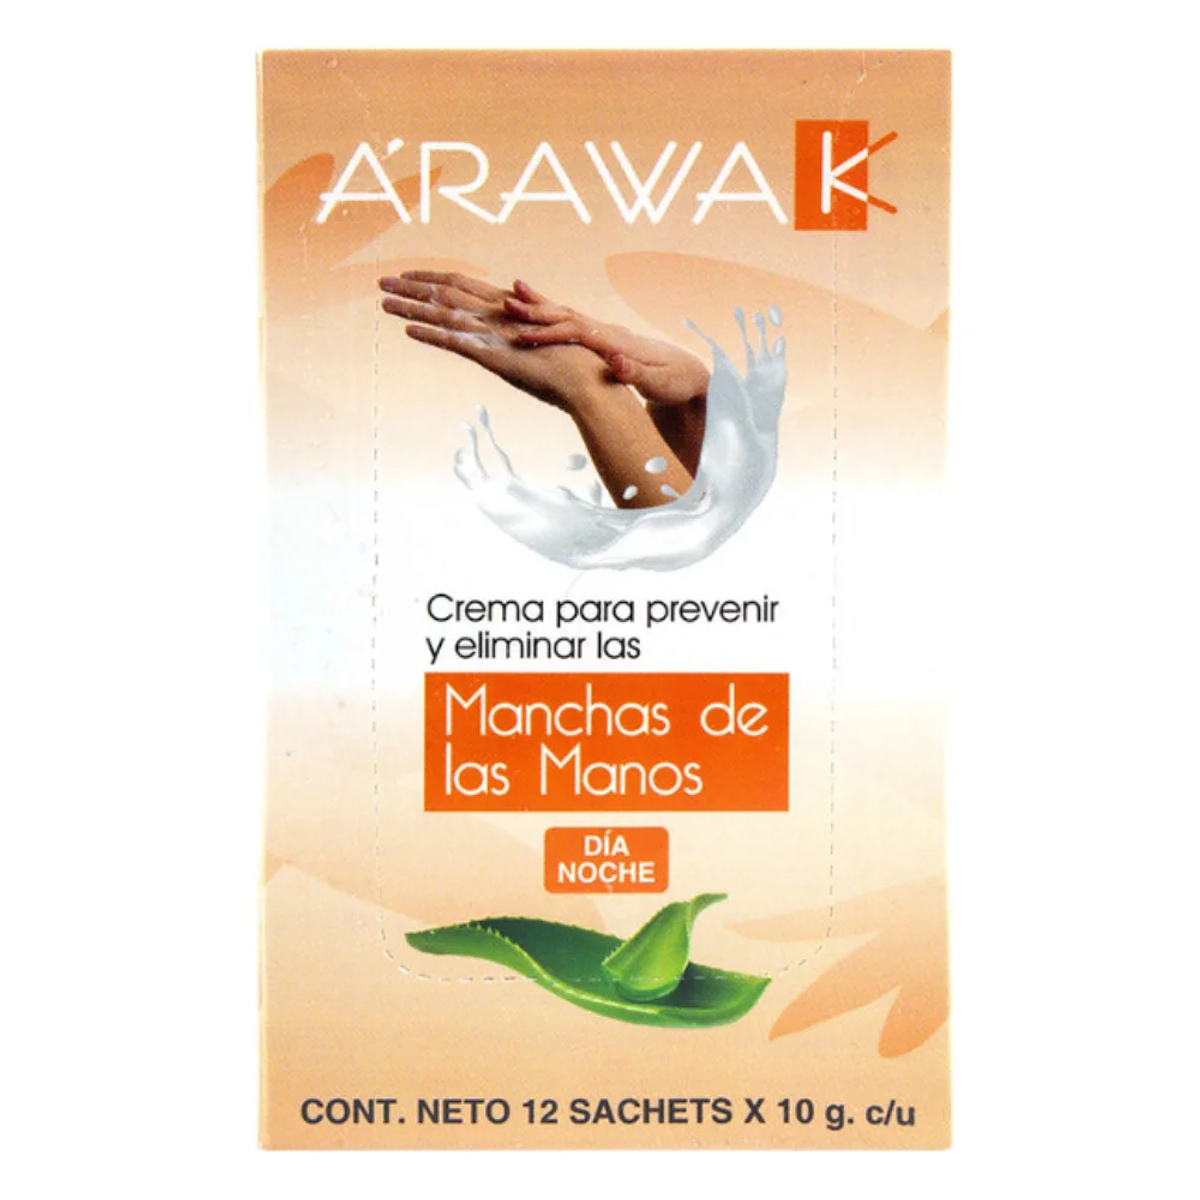 Crema para prevenir las manchas de las manos 12 sachets Araw